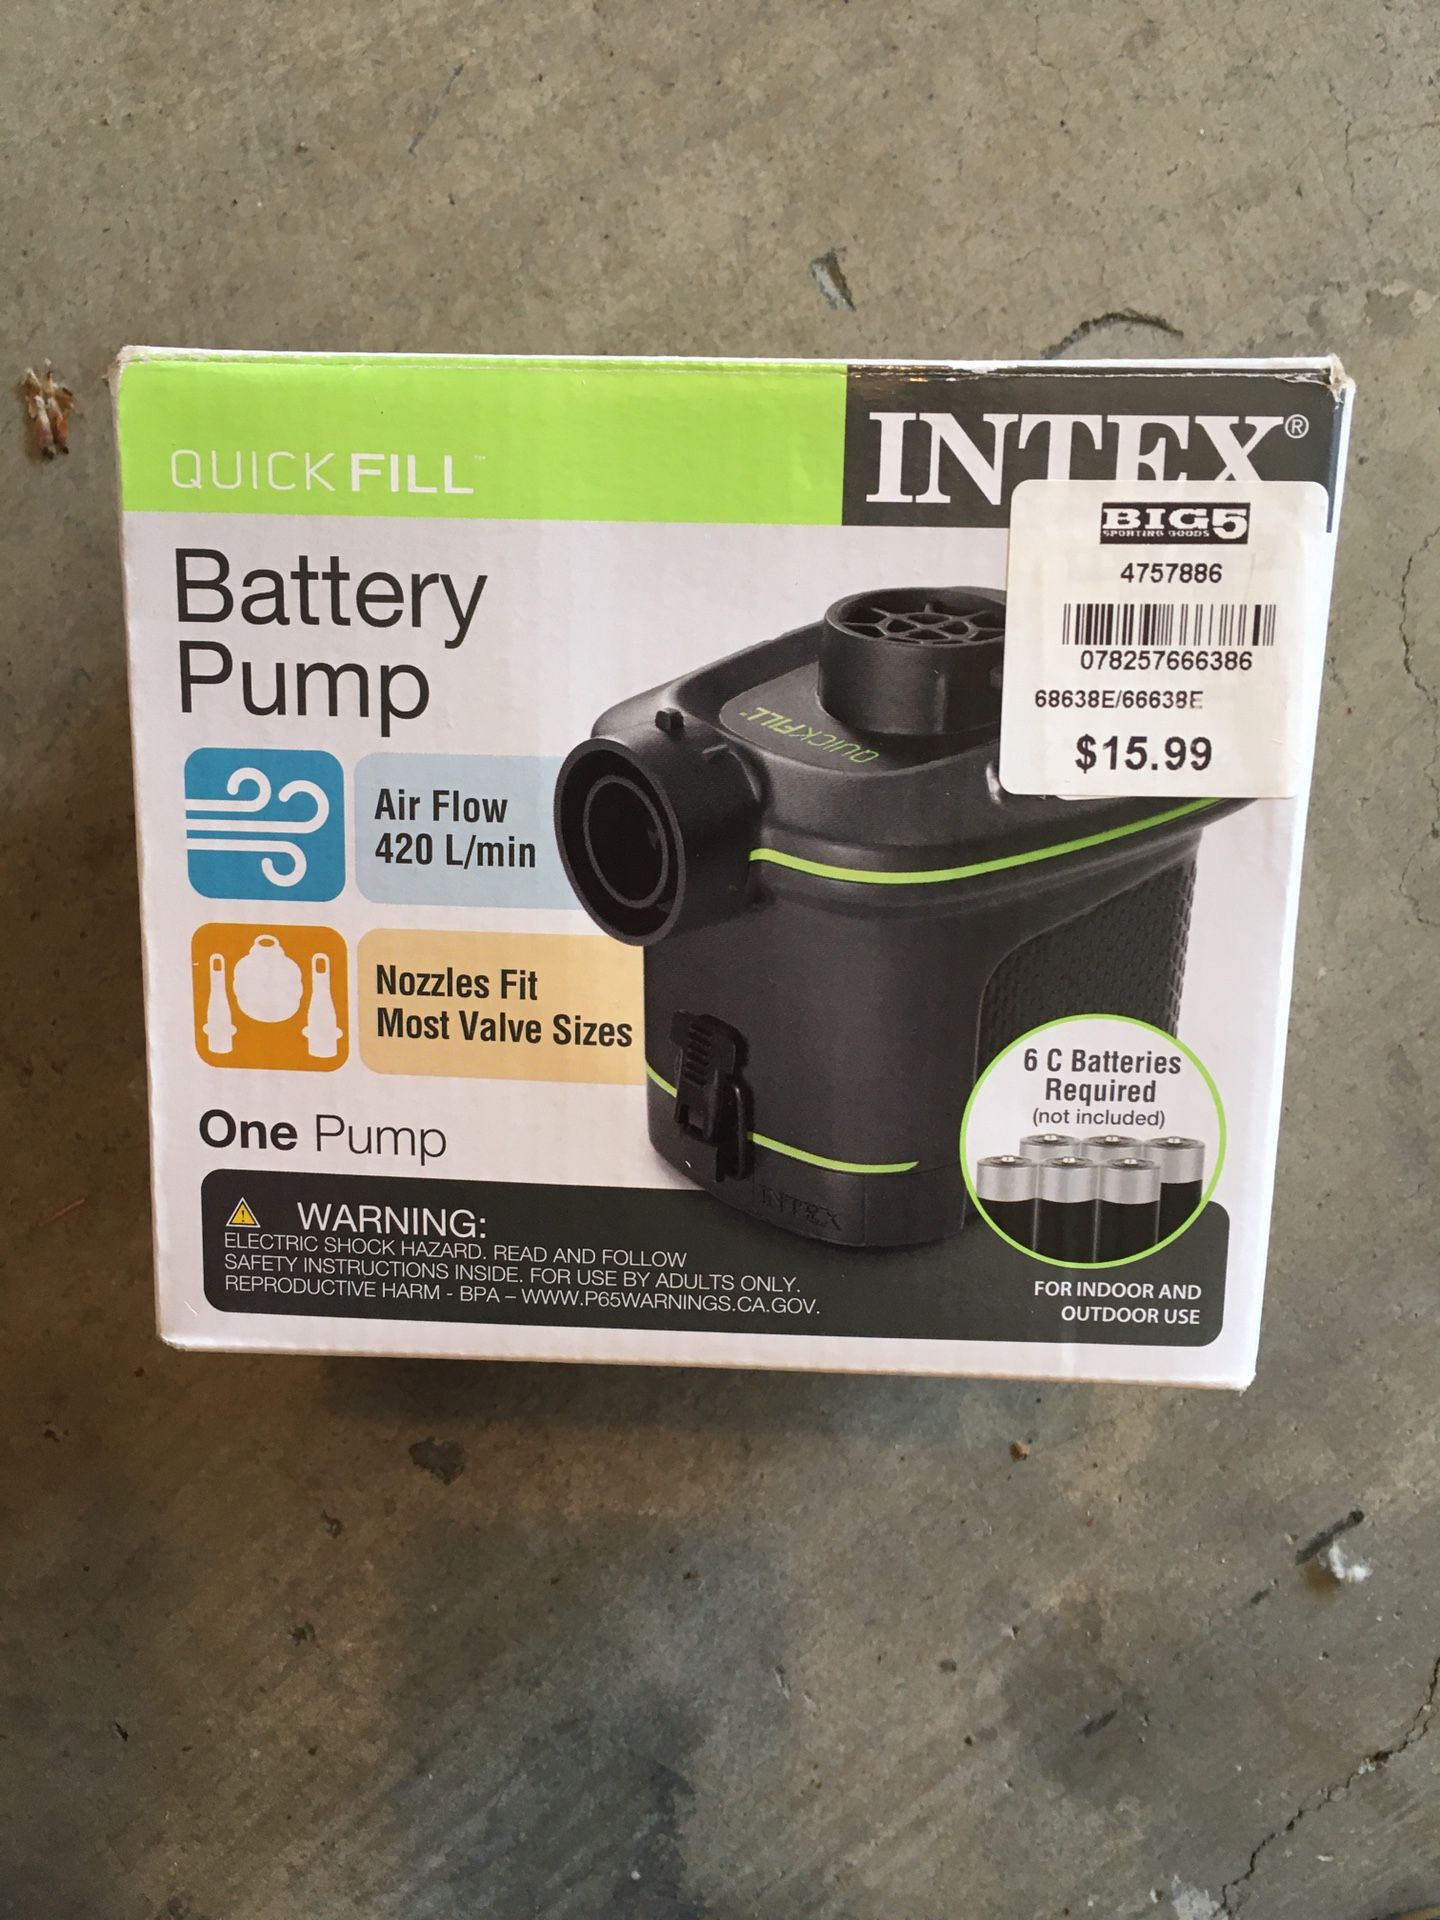 Intex battery operated pump